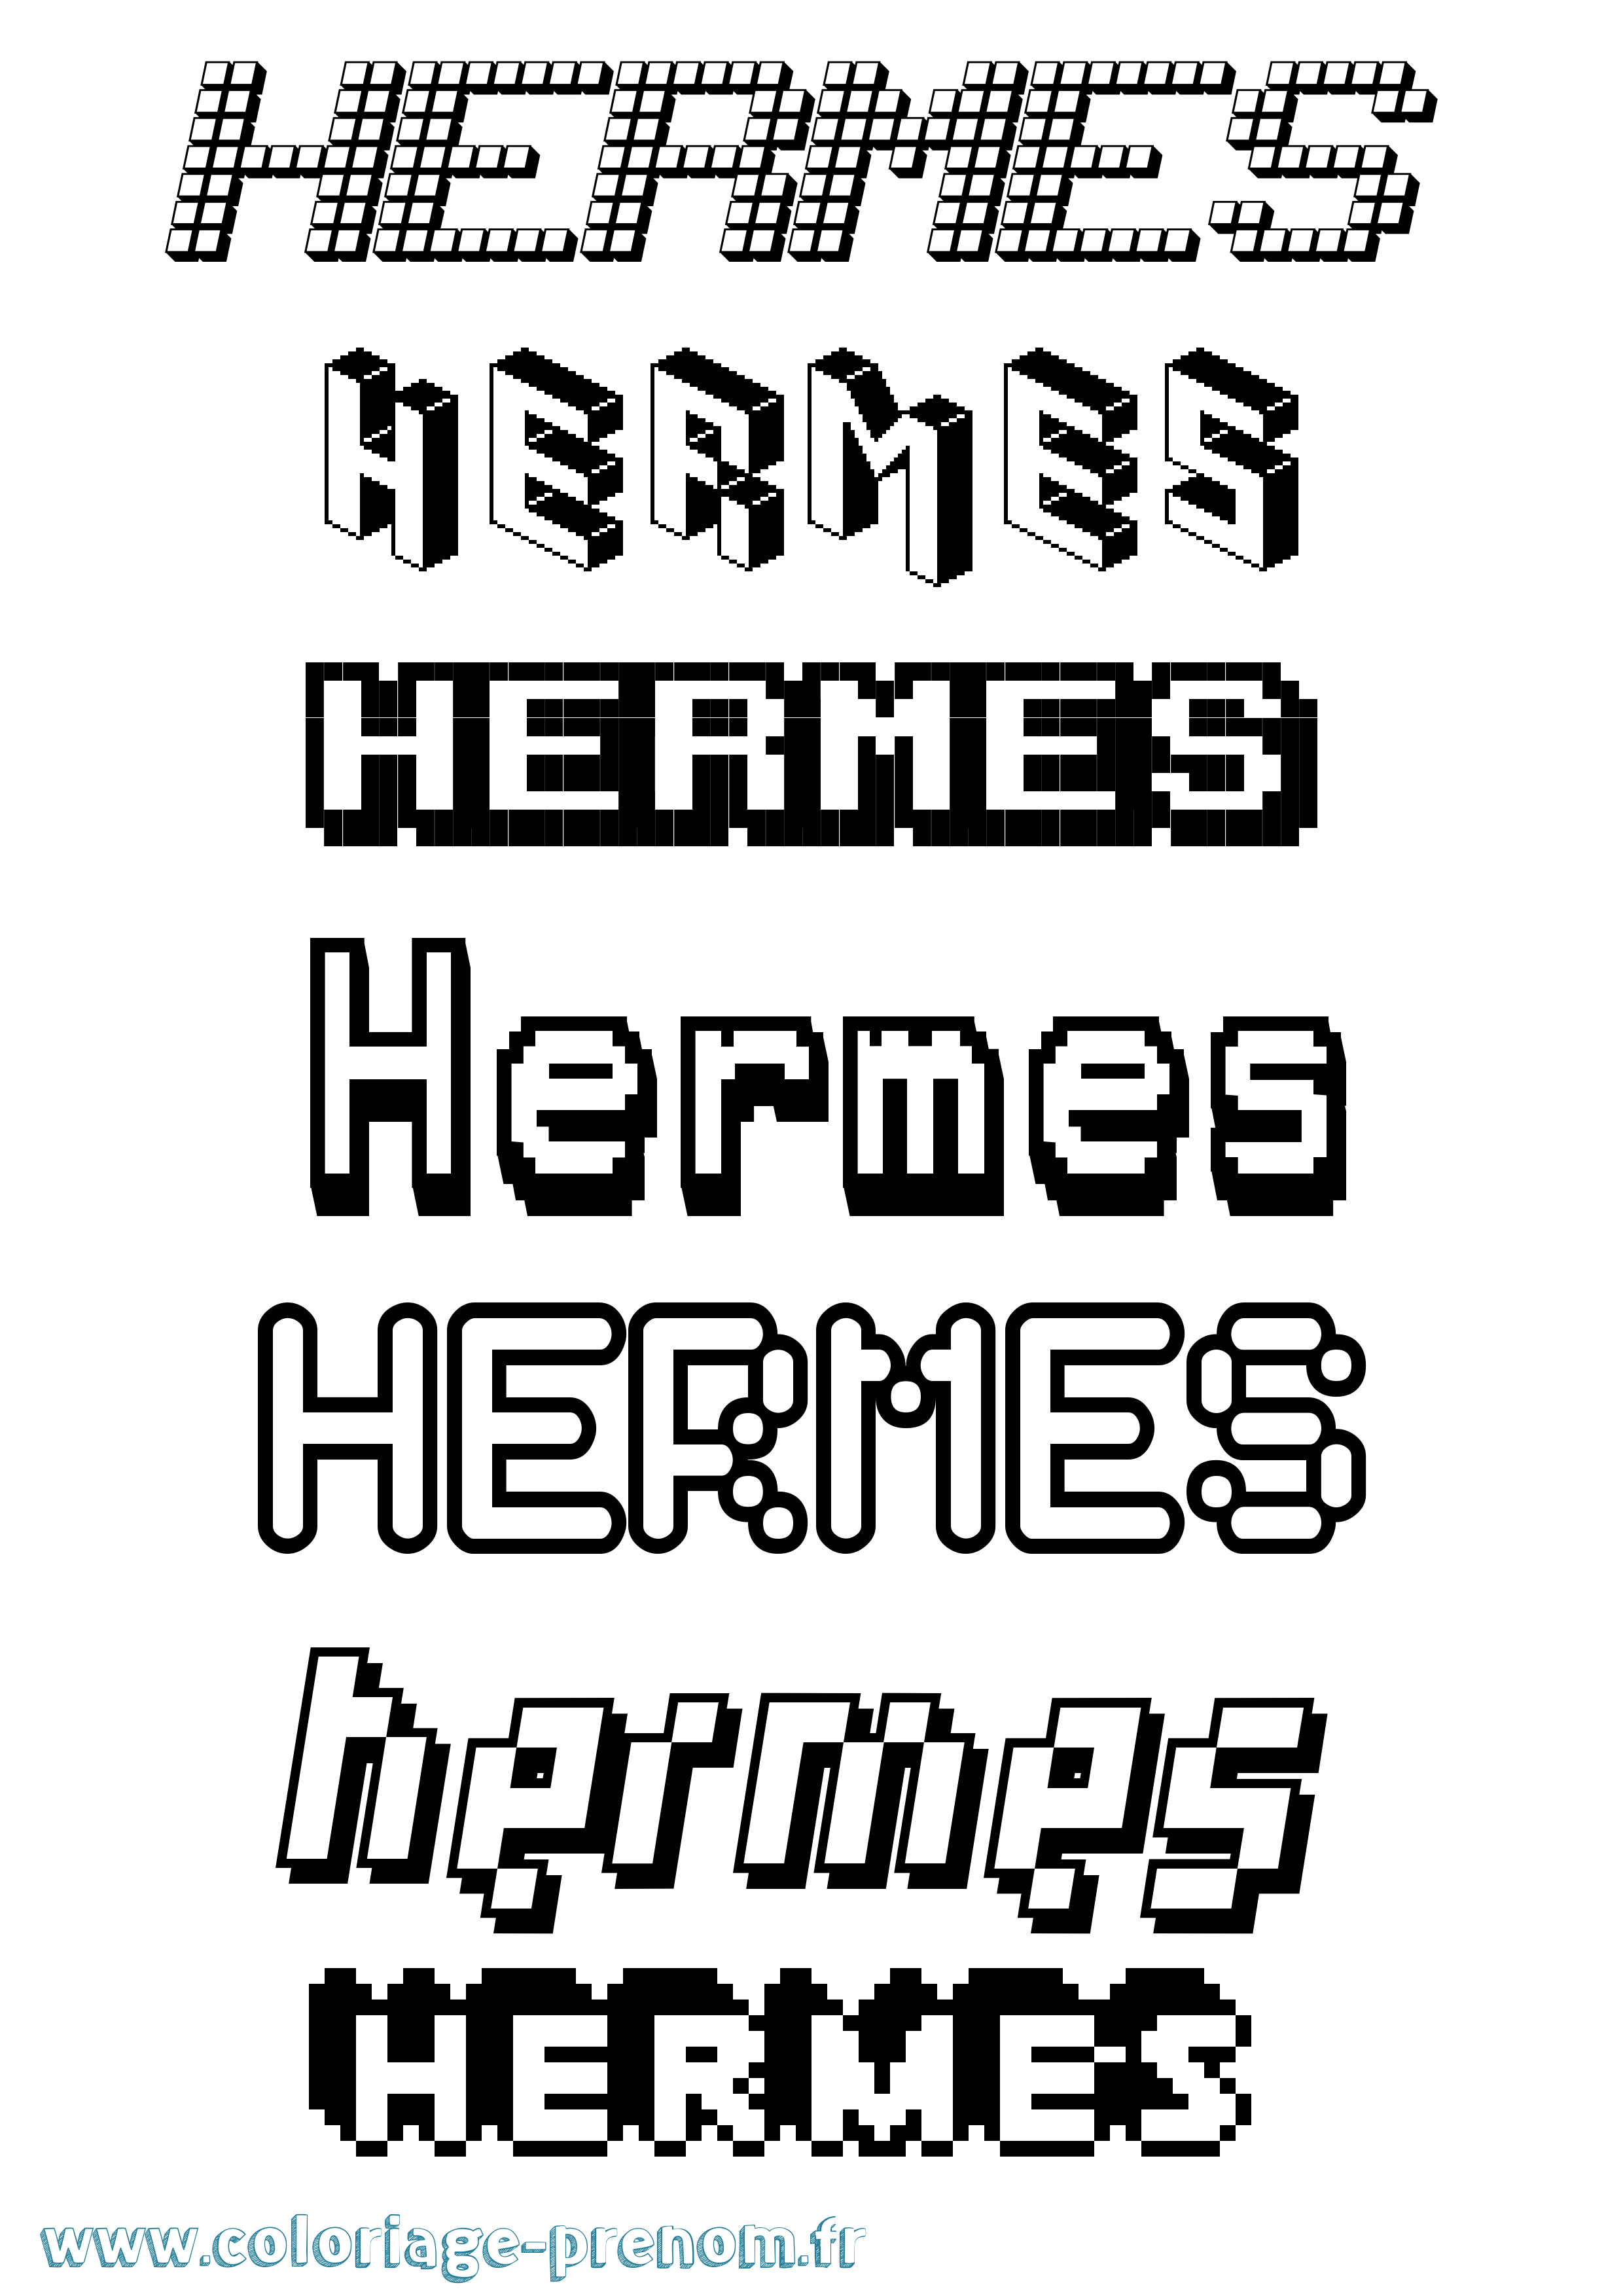 Coloriage prénom Hermes Pixel